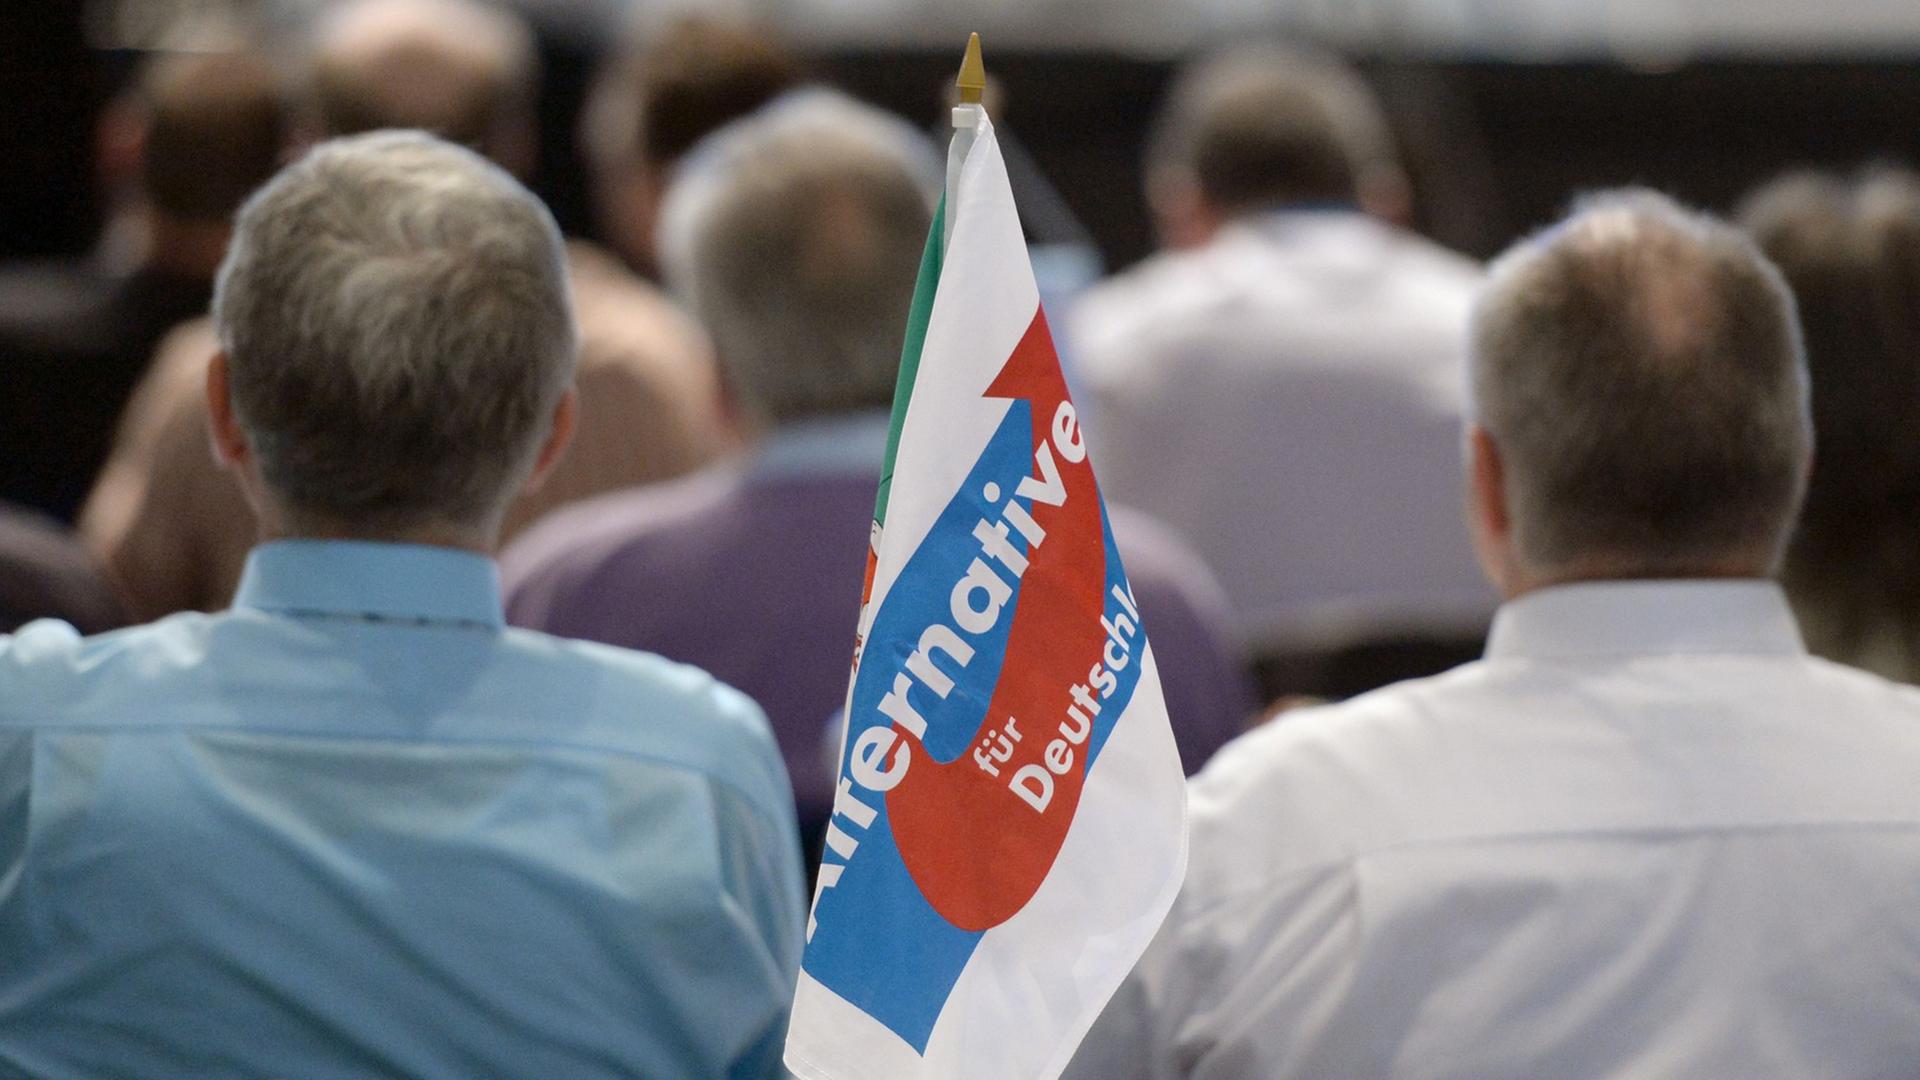 Mitglieder der Partei Alternative für Deutschland (AfD) verfolgen am 22.03.2014 den Europaparteitag in Erfurt (Thüringen). Die AfD will auf dem zweitägigen Parteitag unter anderem ihr Programm für die Europawahl am 25. Mai beschließen.